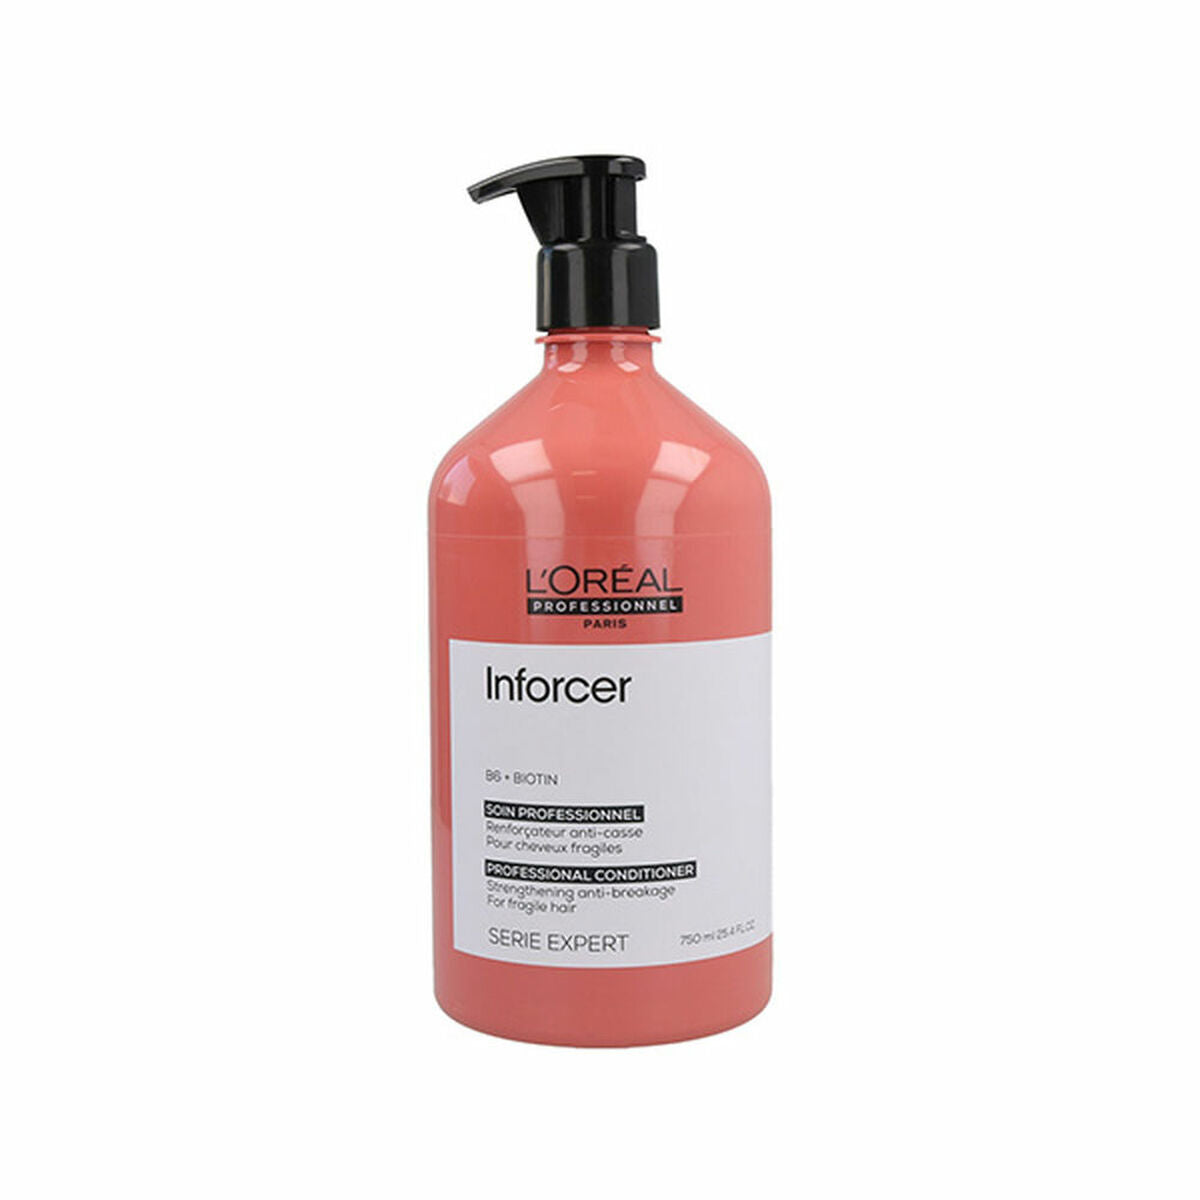 Après-shampoing anti-casse L'Oréal Professionnel Paris Inforcer (750 ml)